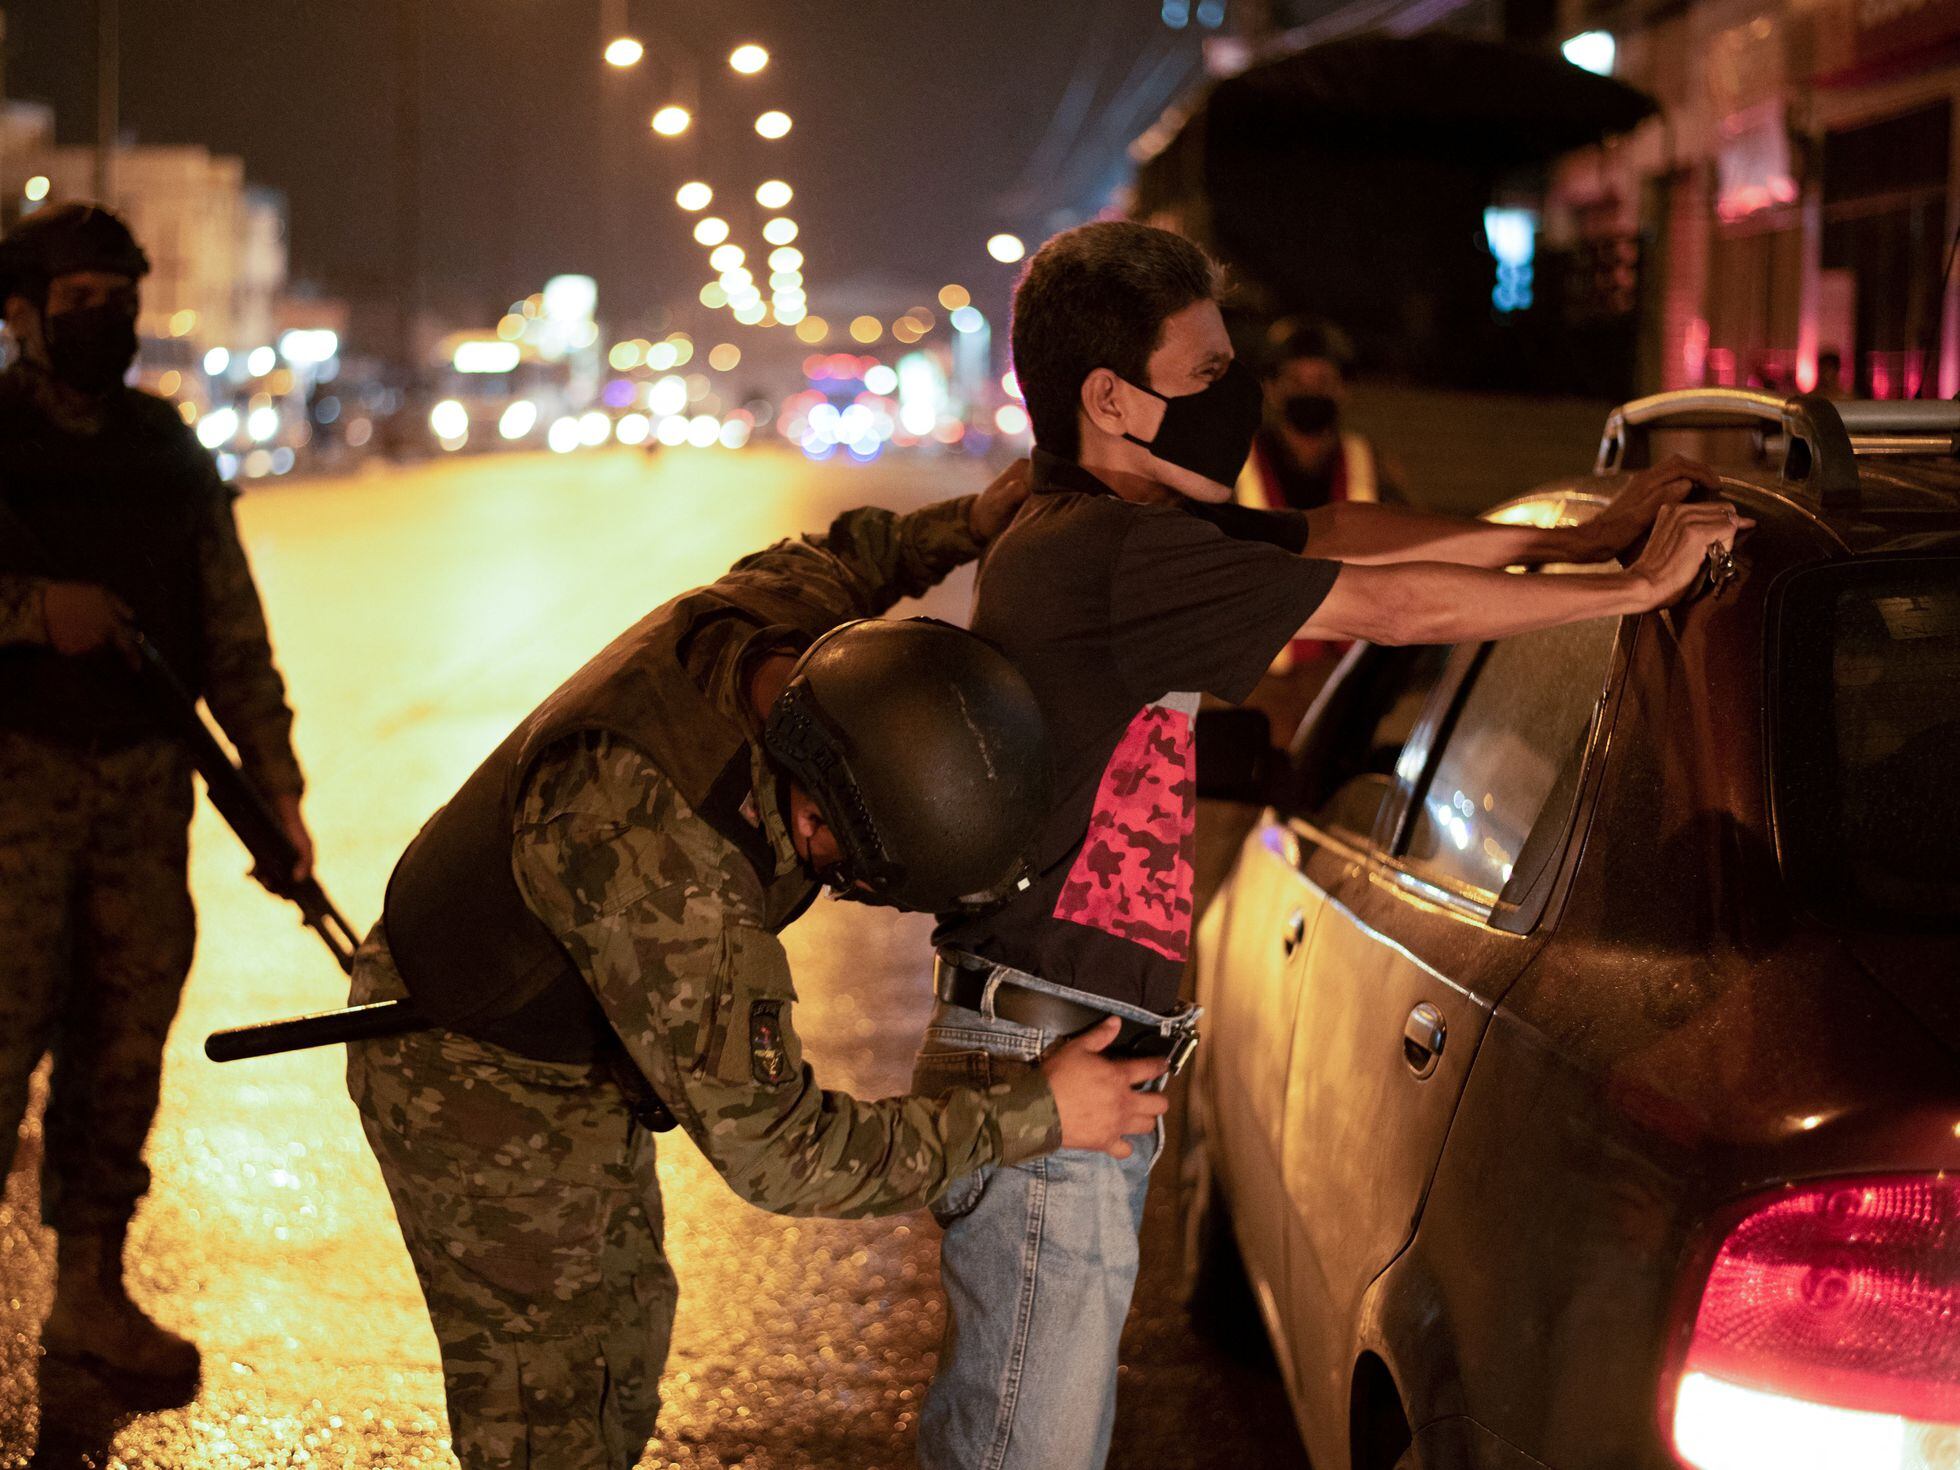 La inseguridad en Ecuador encierra en casa a los ciudadanos y saca a los militares a las calles | Internacional | EL PAÍS